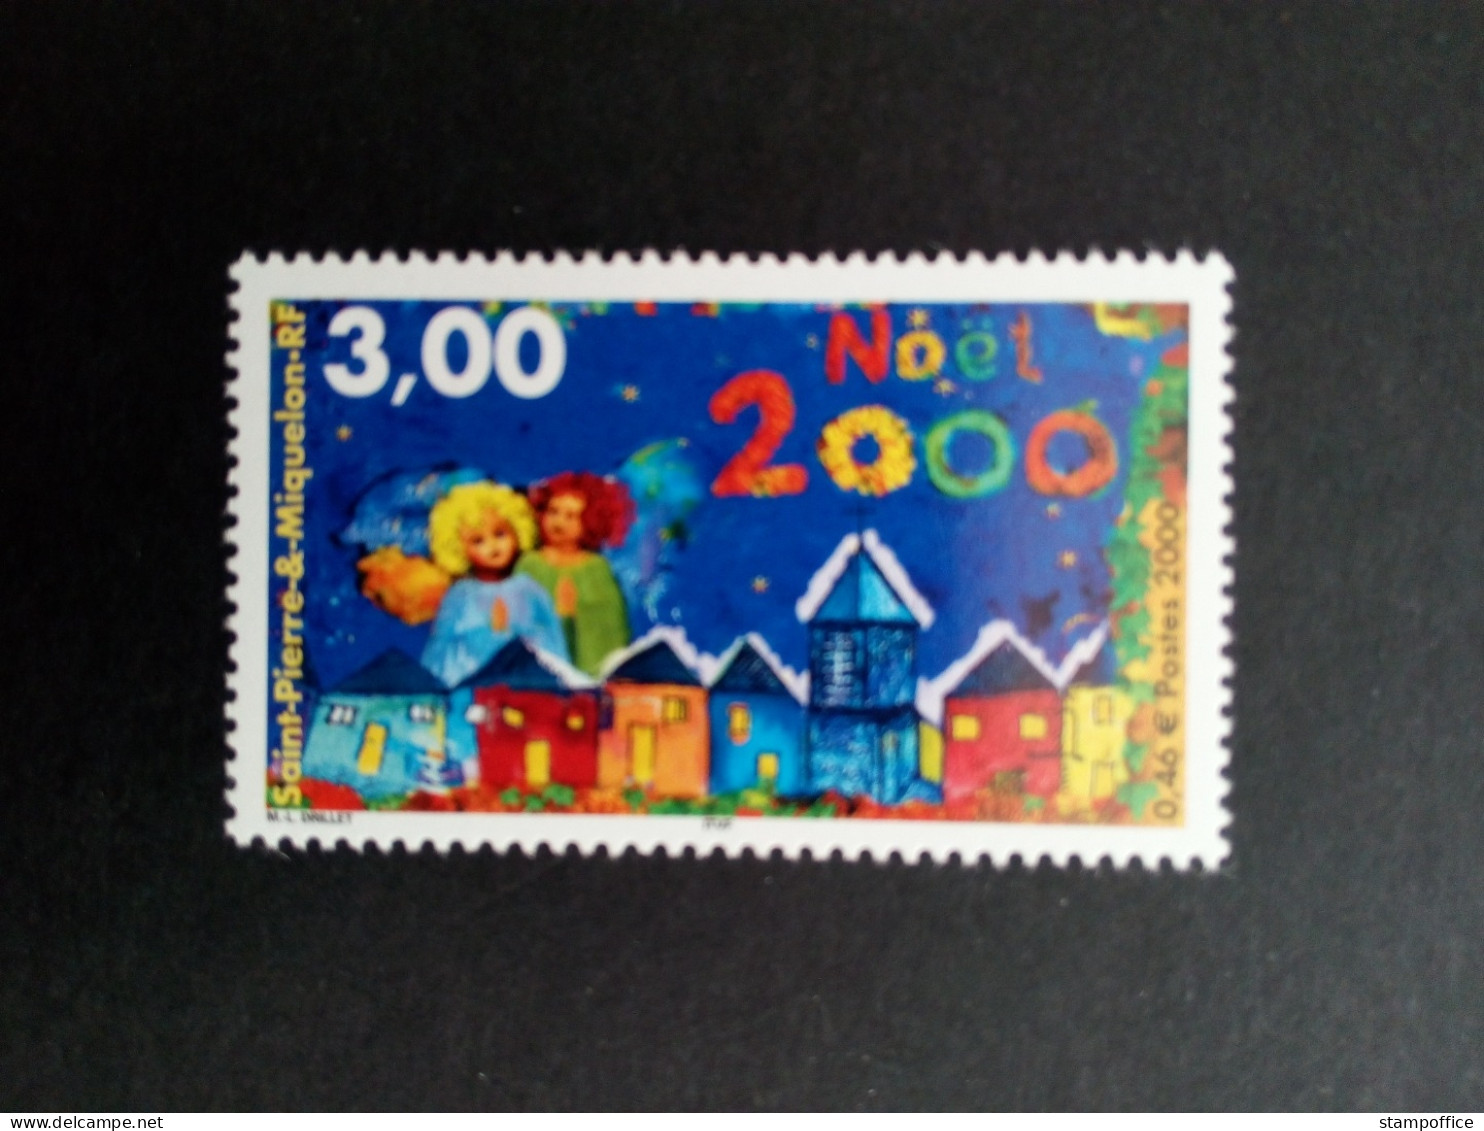 SAINT-PIERRE ET MIQUELON MI-NR. 810 POSTFRISCH(MINT) WEIHNACHTEN 2000 - Unused Stamps